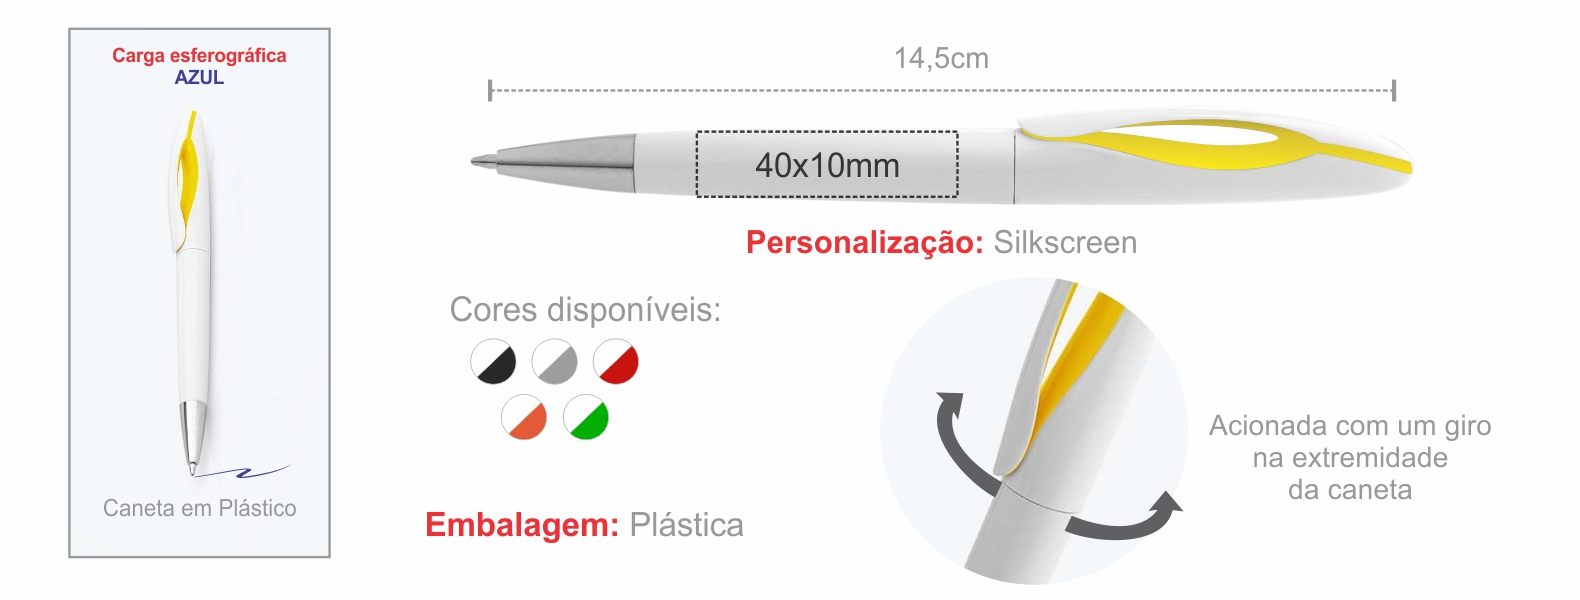 Caneta esferográfica em Plástico branca/amarela. Conta com carga esferográfica azul acionada com um giro na extremidade da caneta.